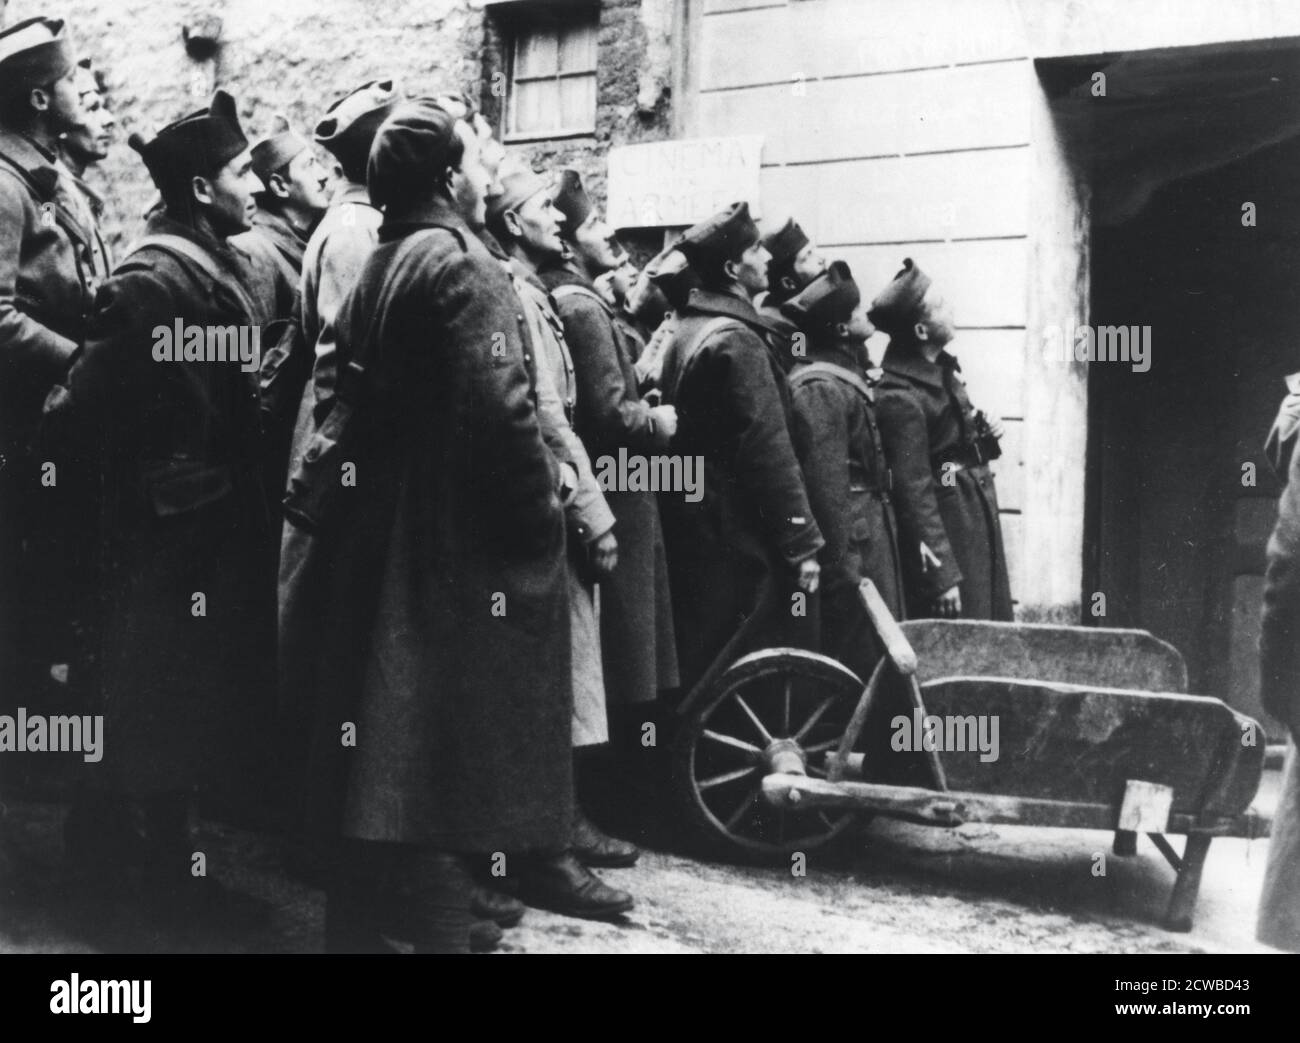 Soldats français dans un cinéma militaire, France, 1940. Le photographe est inconnu. Banque D'Images